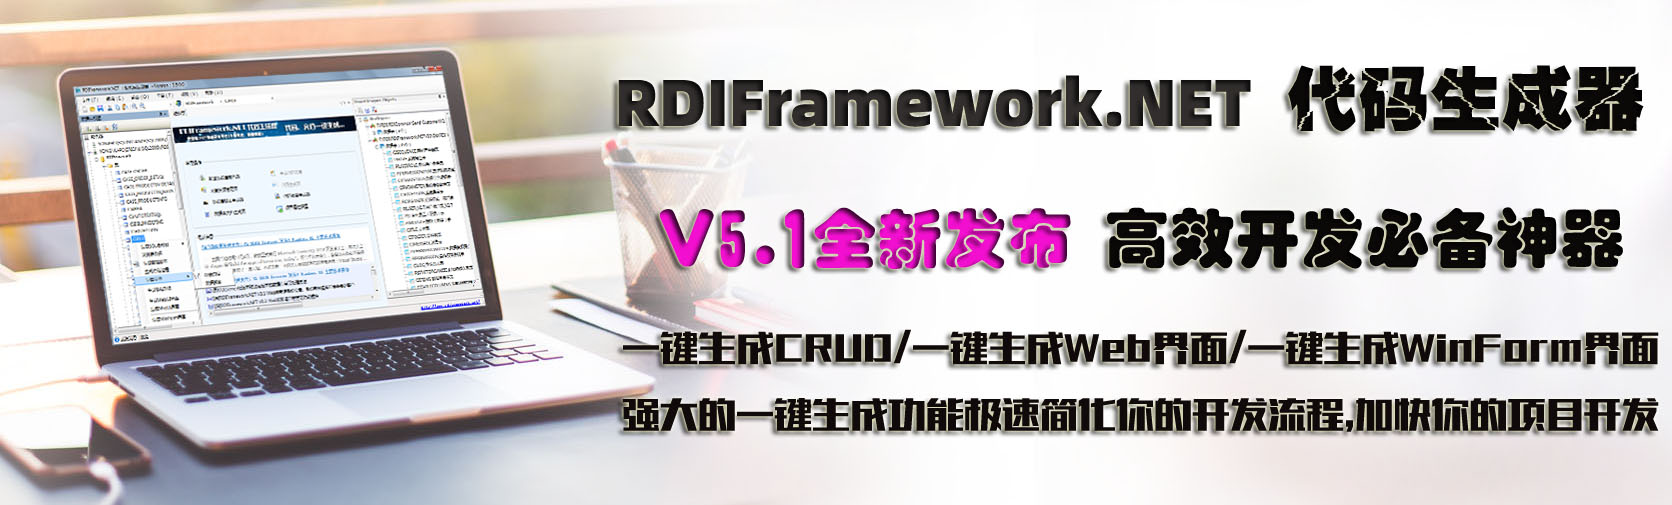 RDIFramework.NET 代码生成器 V5.1版本 正式发布